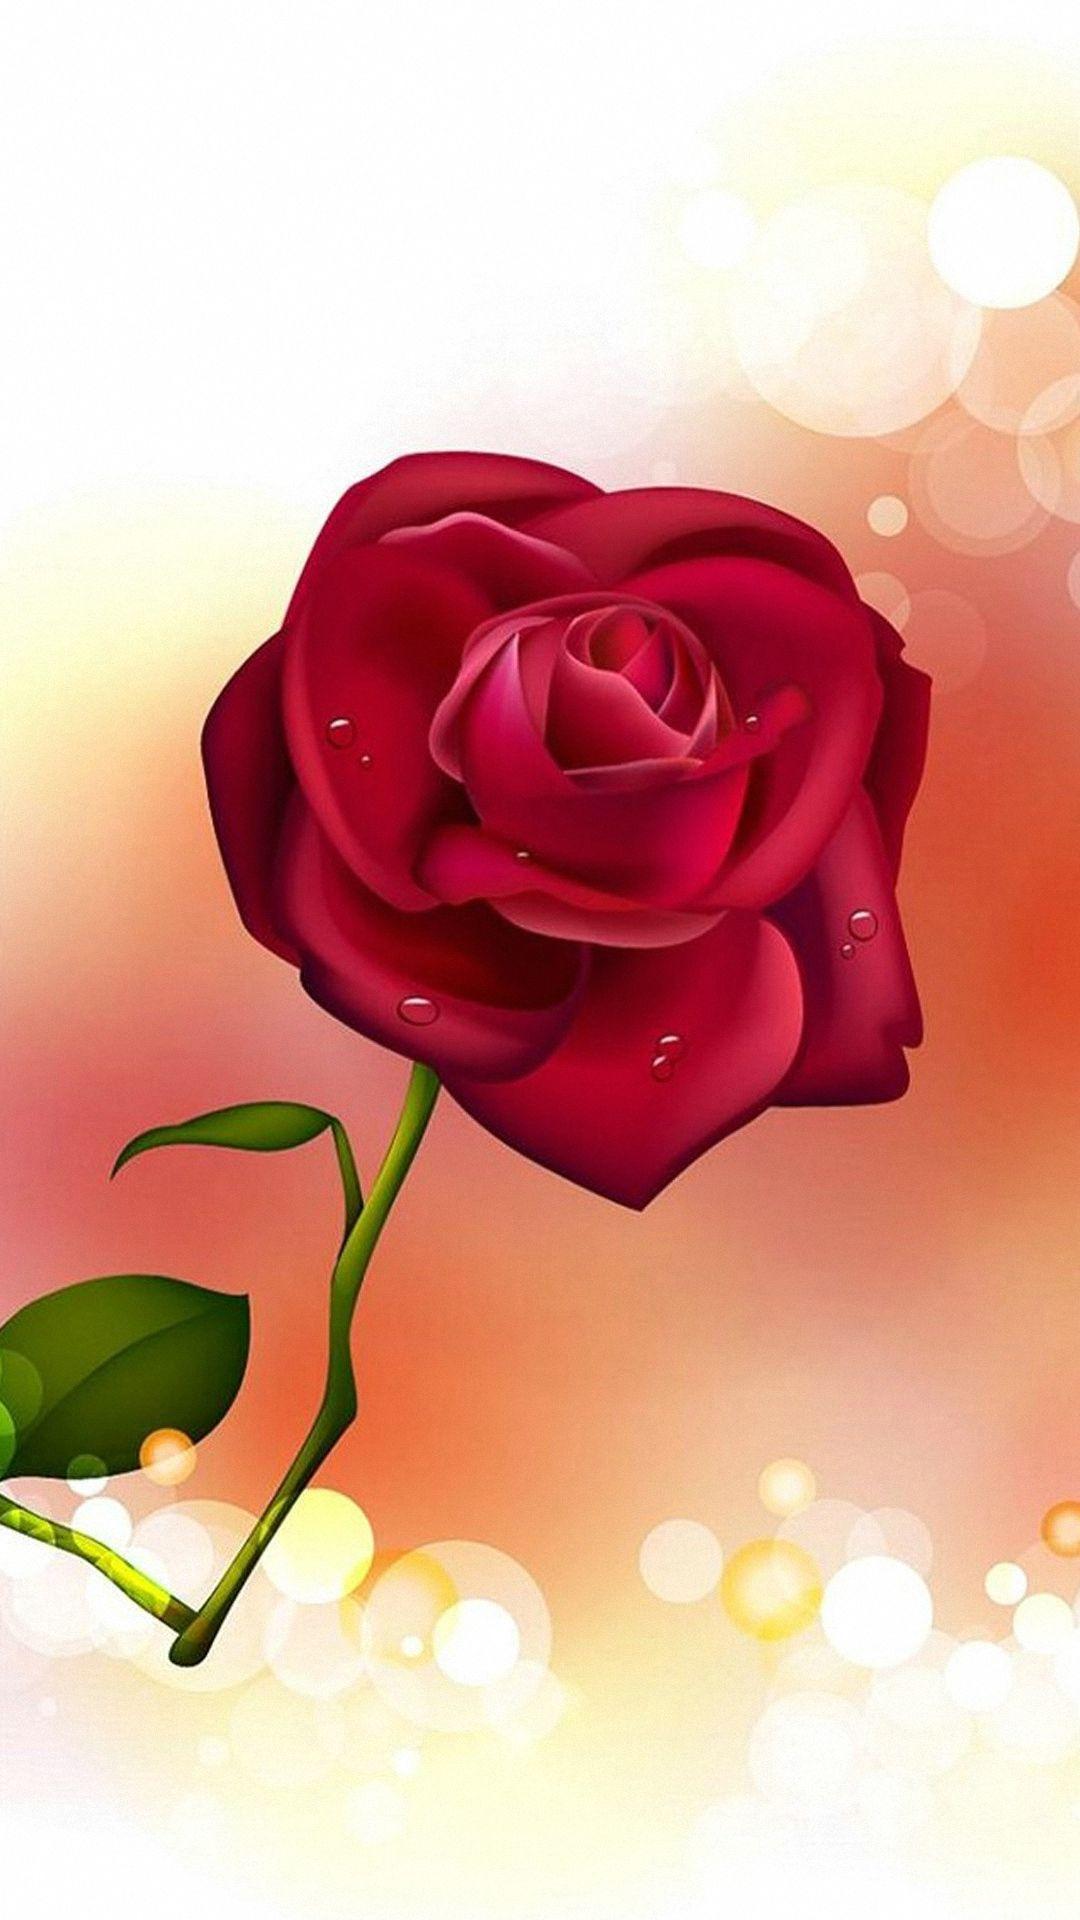 HD Rose Wallpaper For Mobile. Rose flower wallpaper, Rose wallpaper, Red roses wallpaper